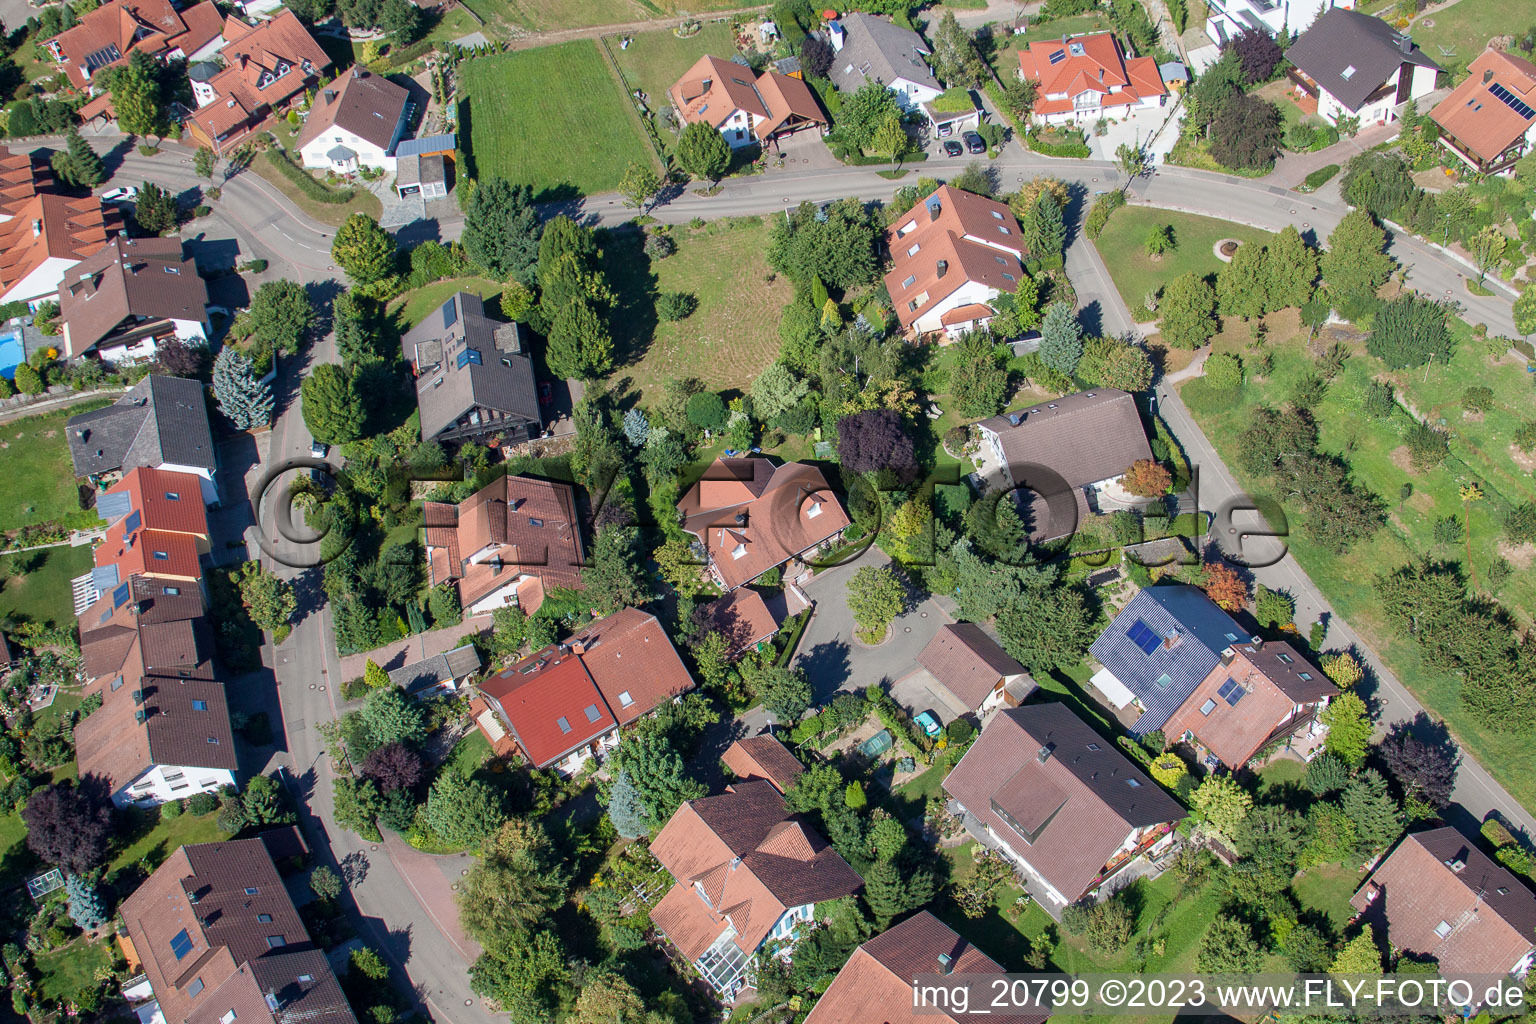 Ortsteil Fessenbach in Offenburg im Bundesland Baden-Württemberg, Deutschland von der Drohne aus gesehen